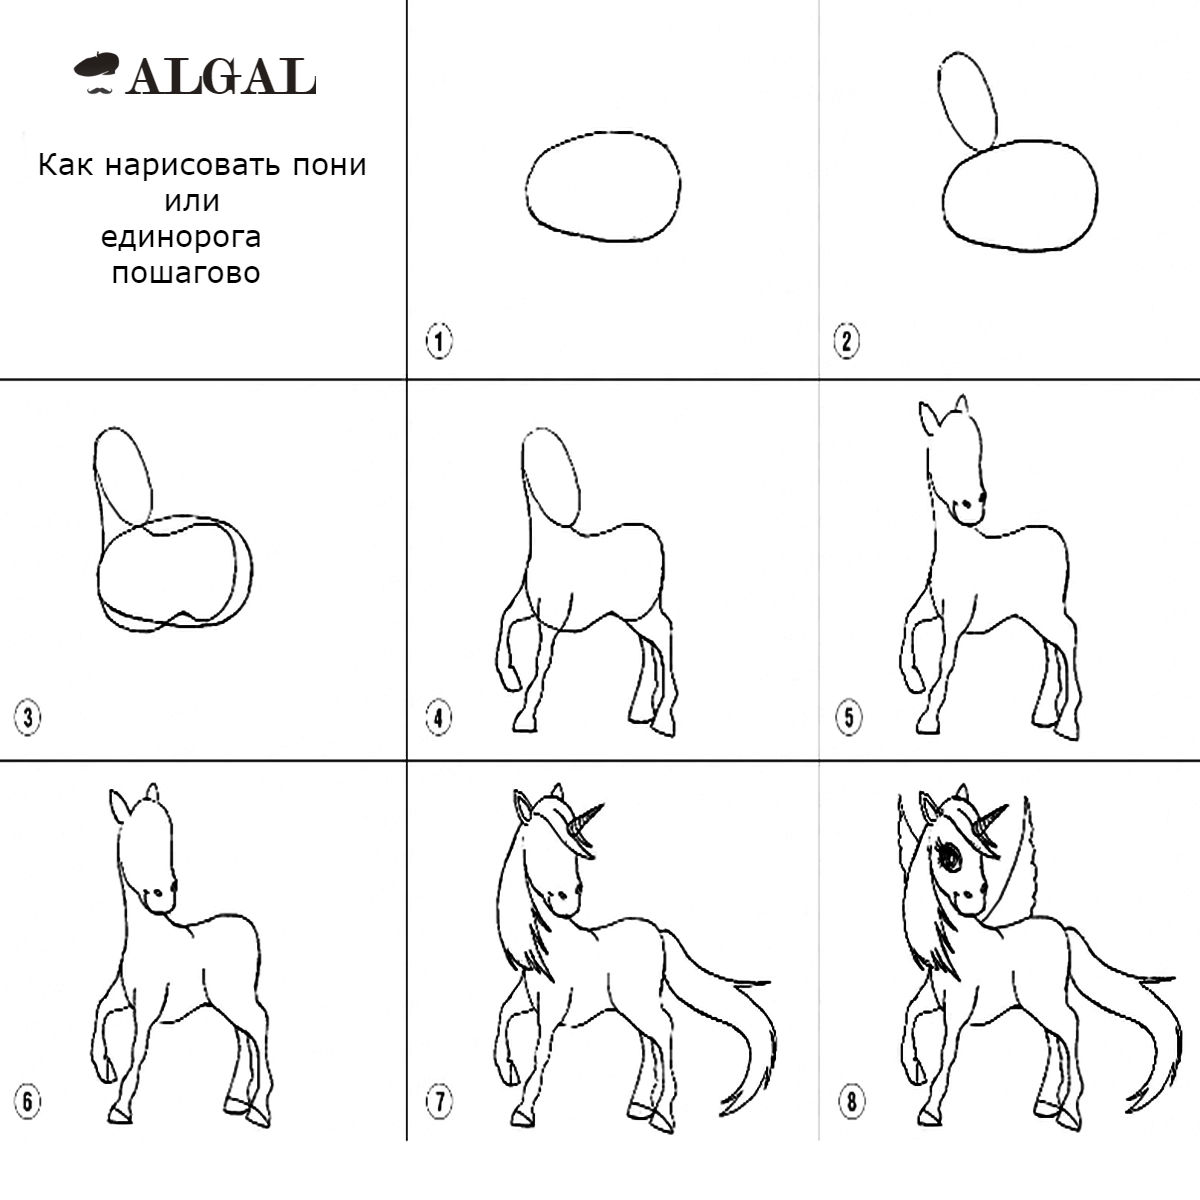 Как нарисовать пони или единорога пошагово